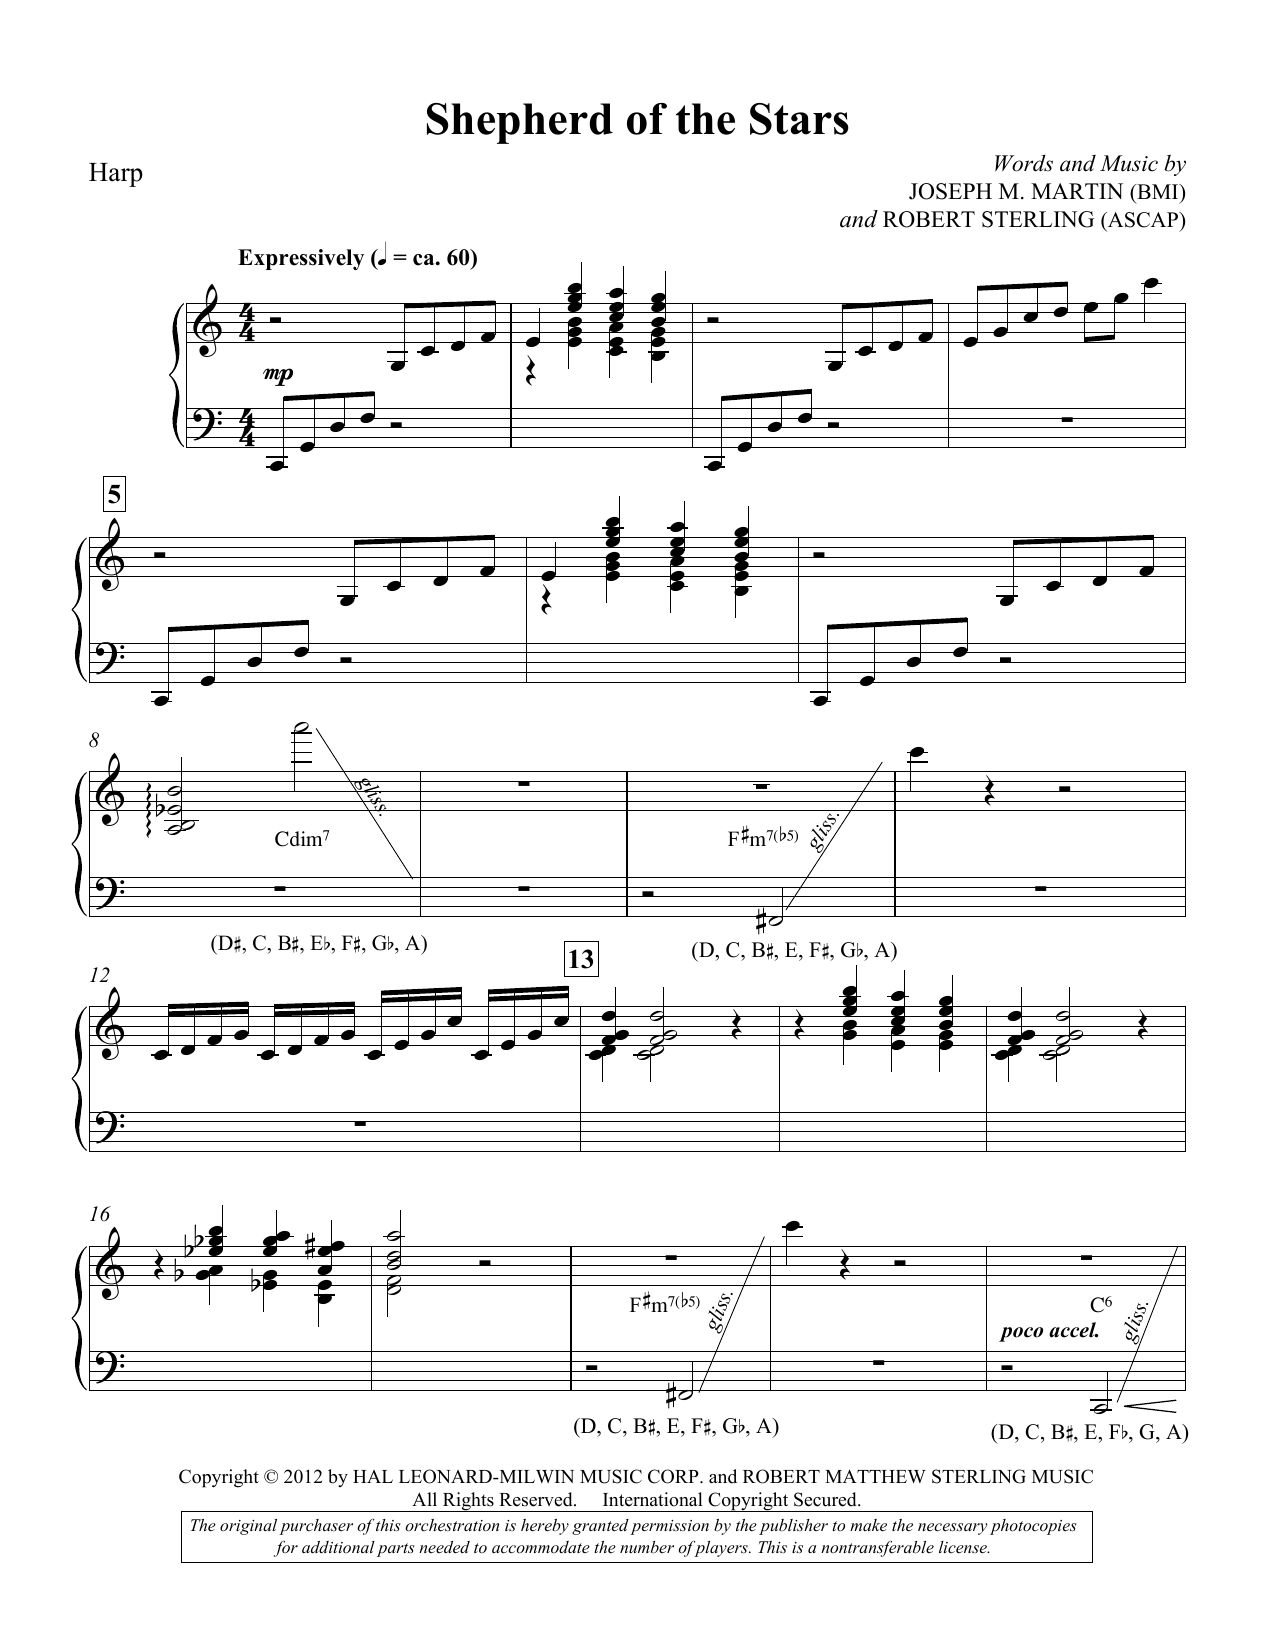 Download Joseph M. Martin Shepherd Of The Stars - Harp Sheet Music